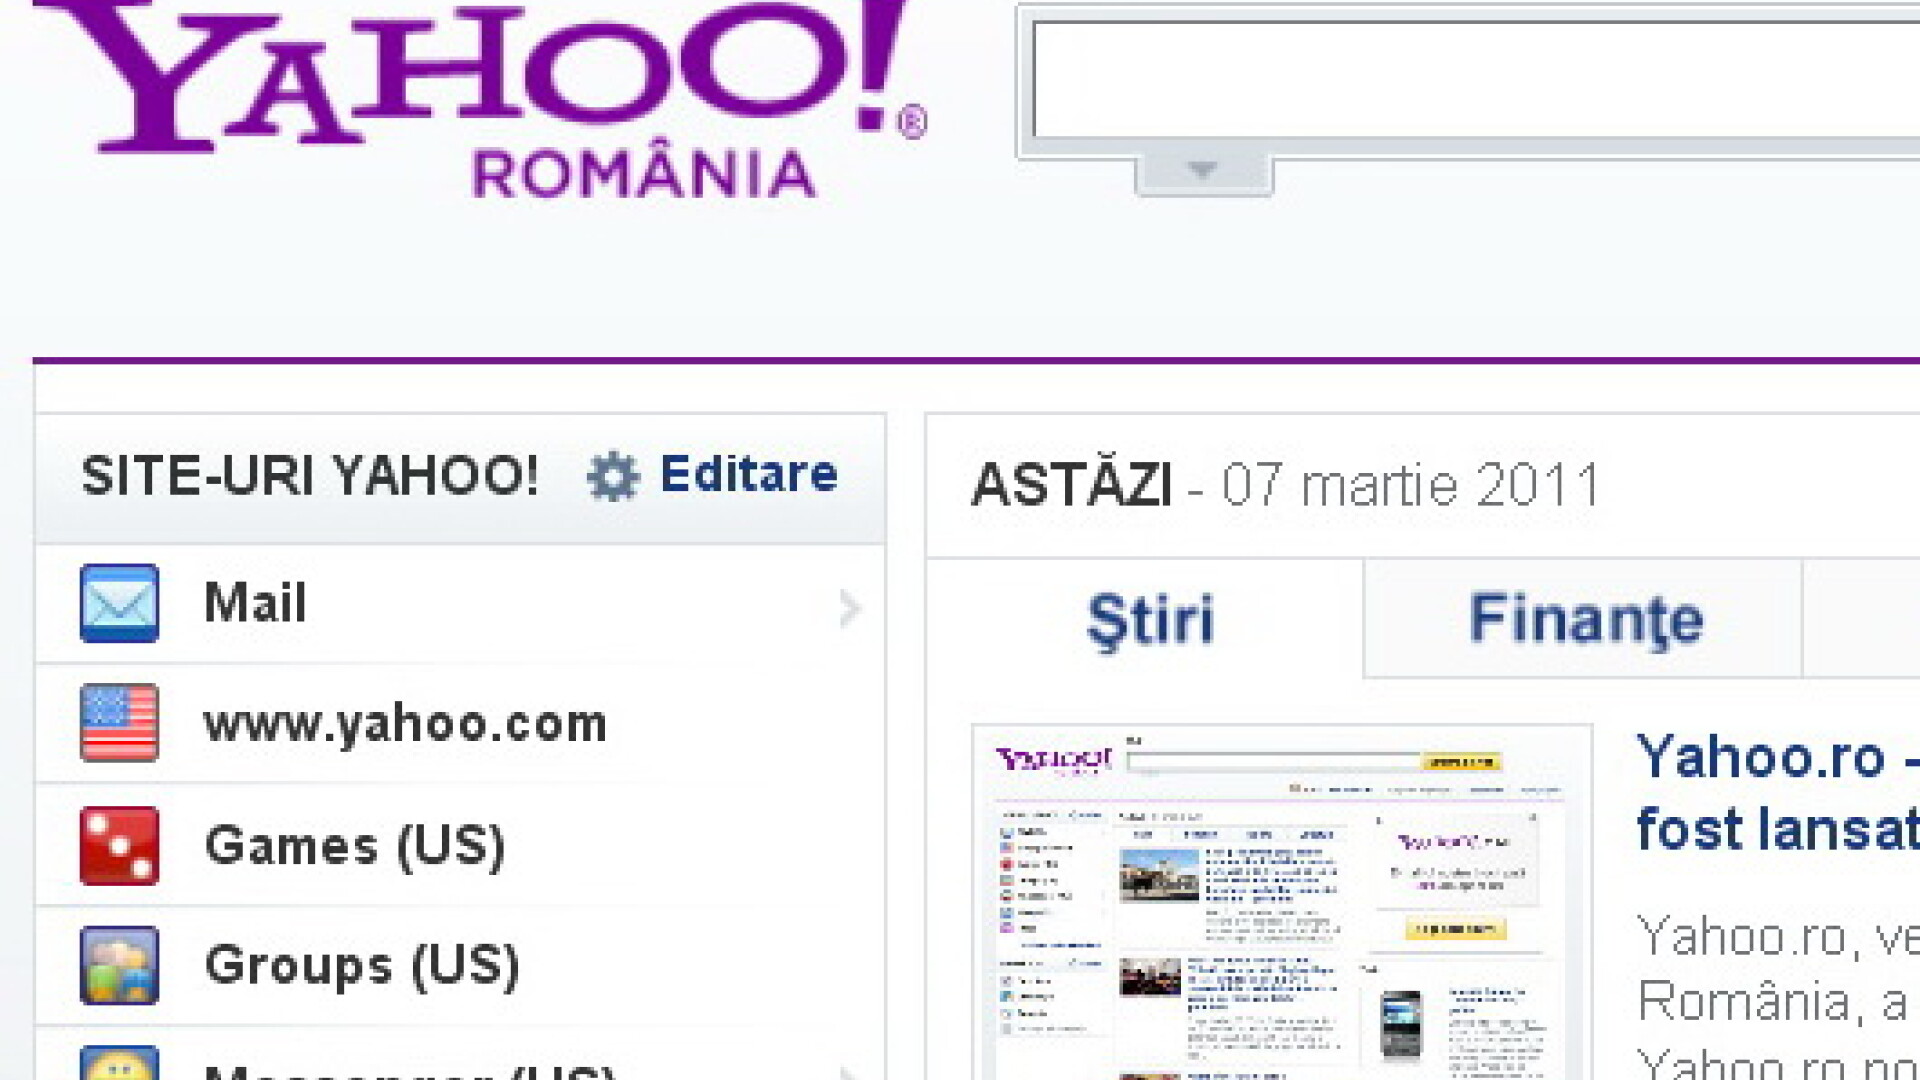 Yahoo.ro s-a lansat